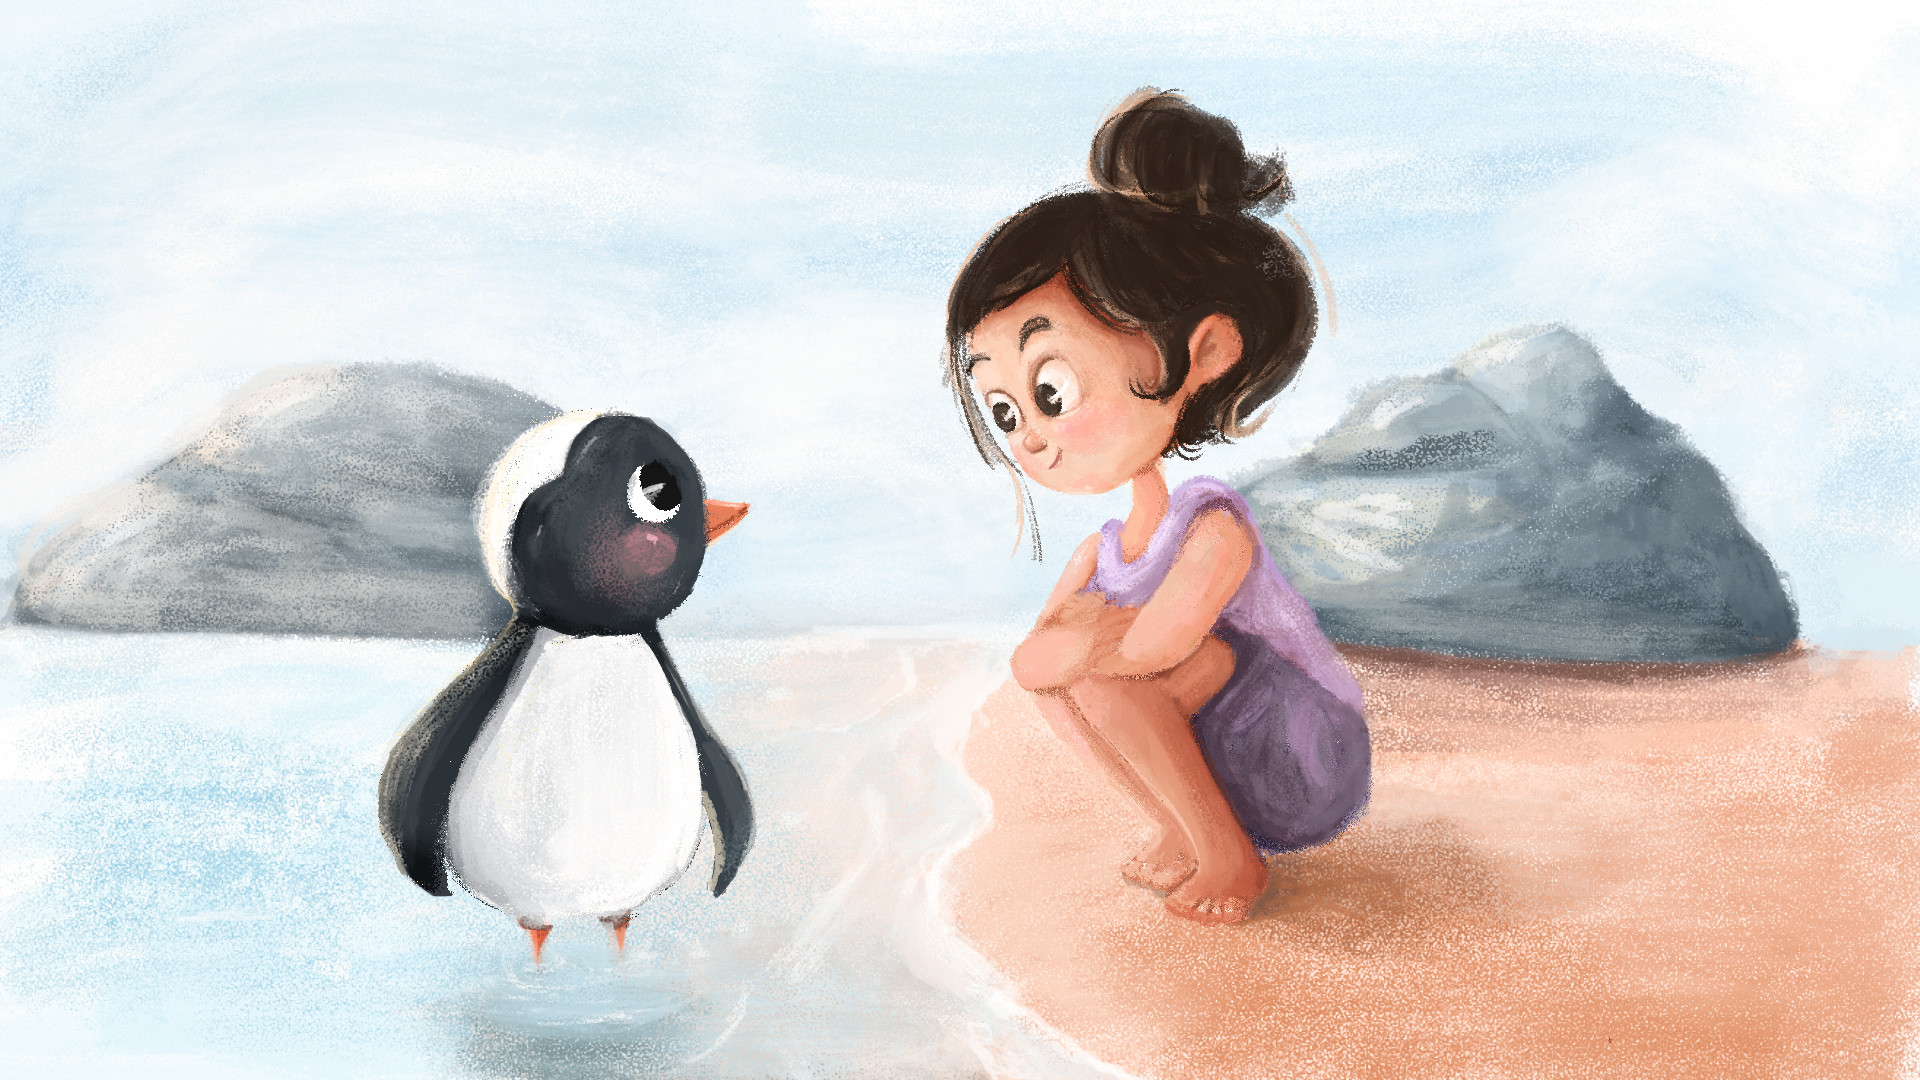 Фото Девочка, сидя на берегу, смотрит на пингвина, который стоит в воде, by elif cansu ozen